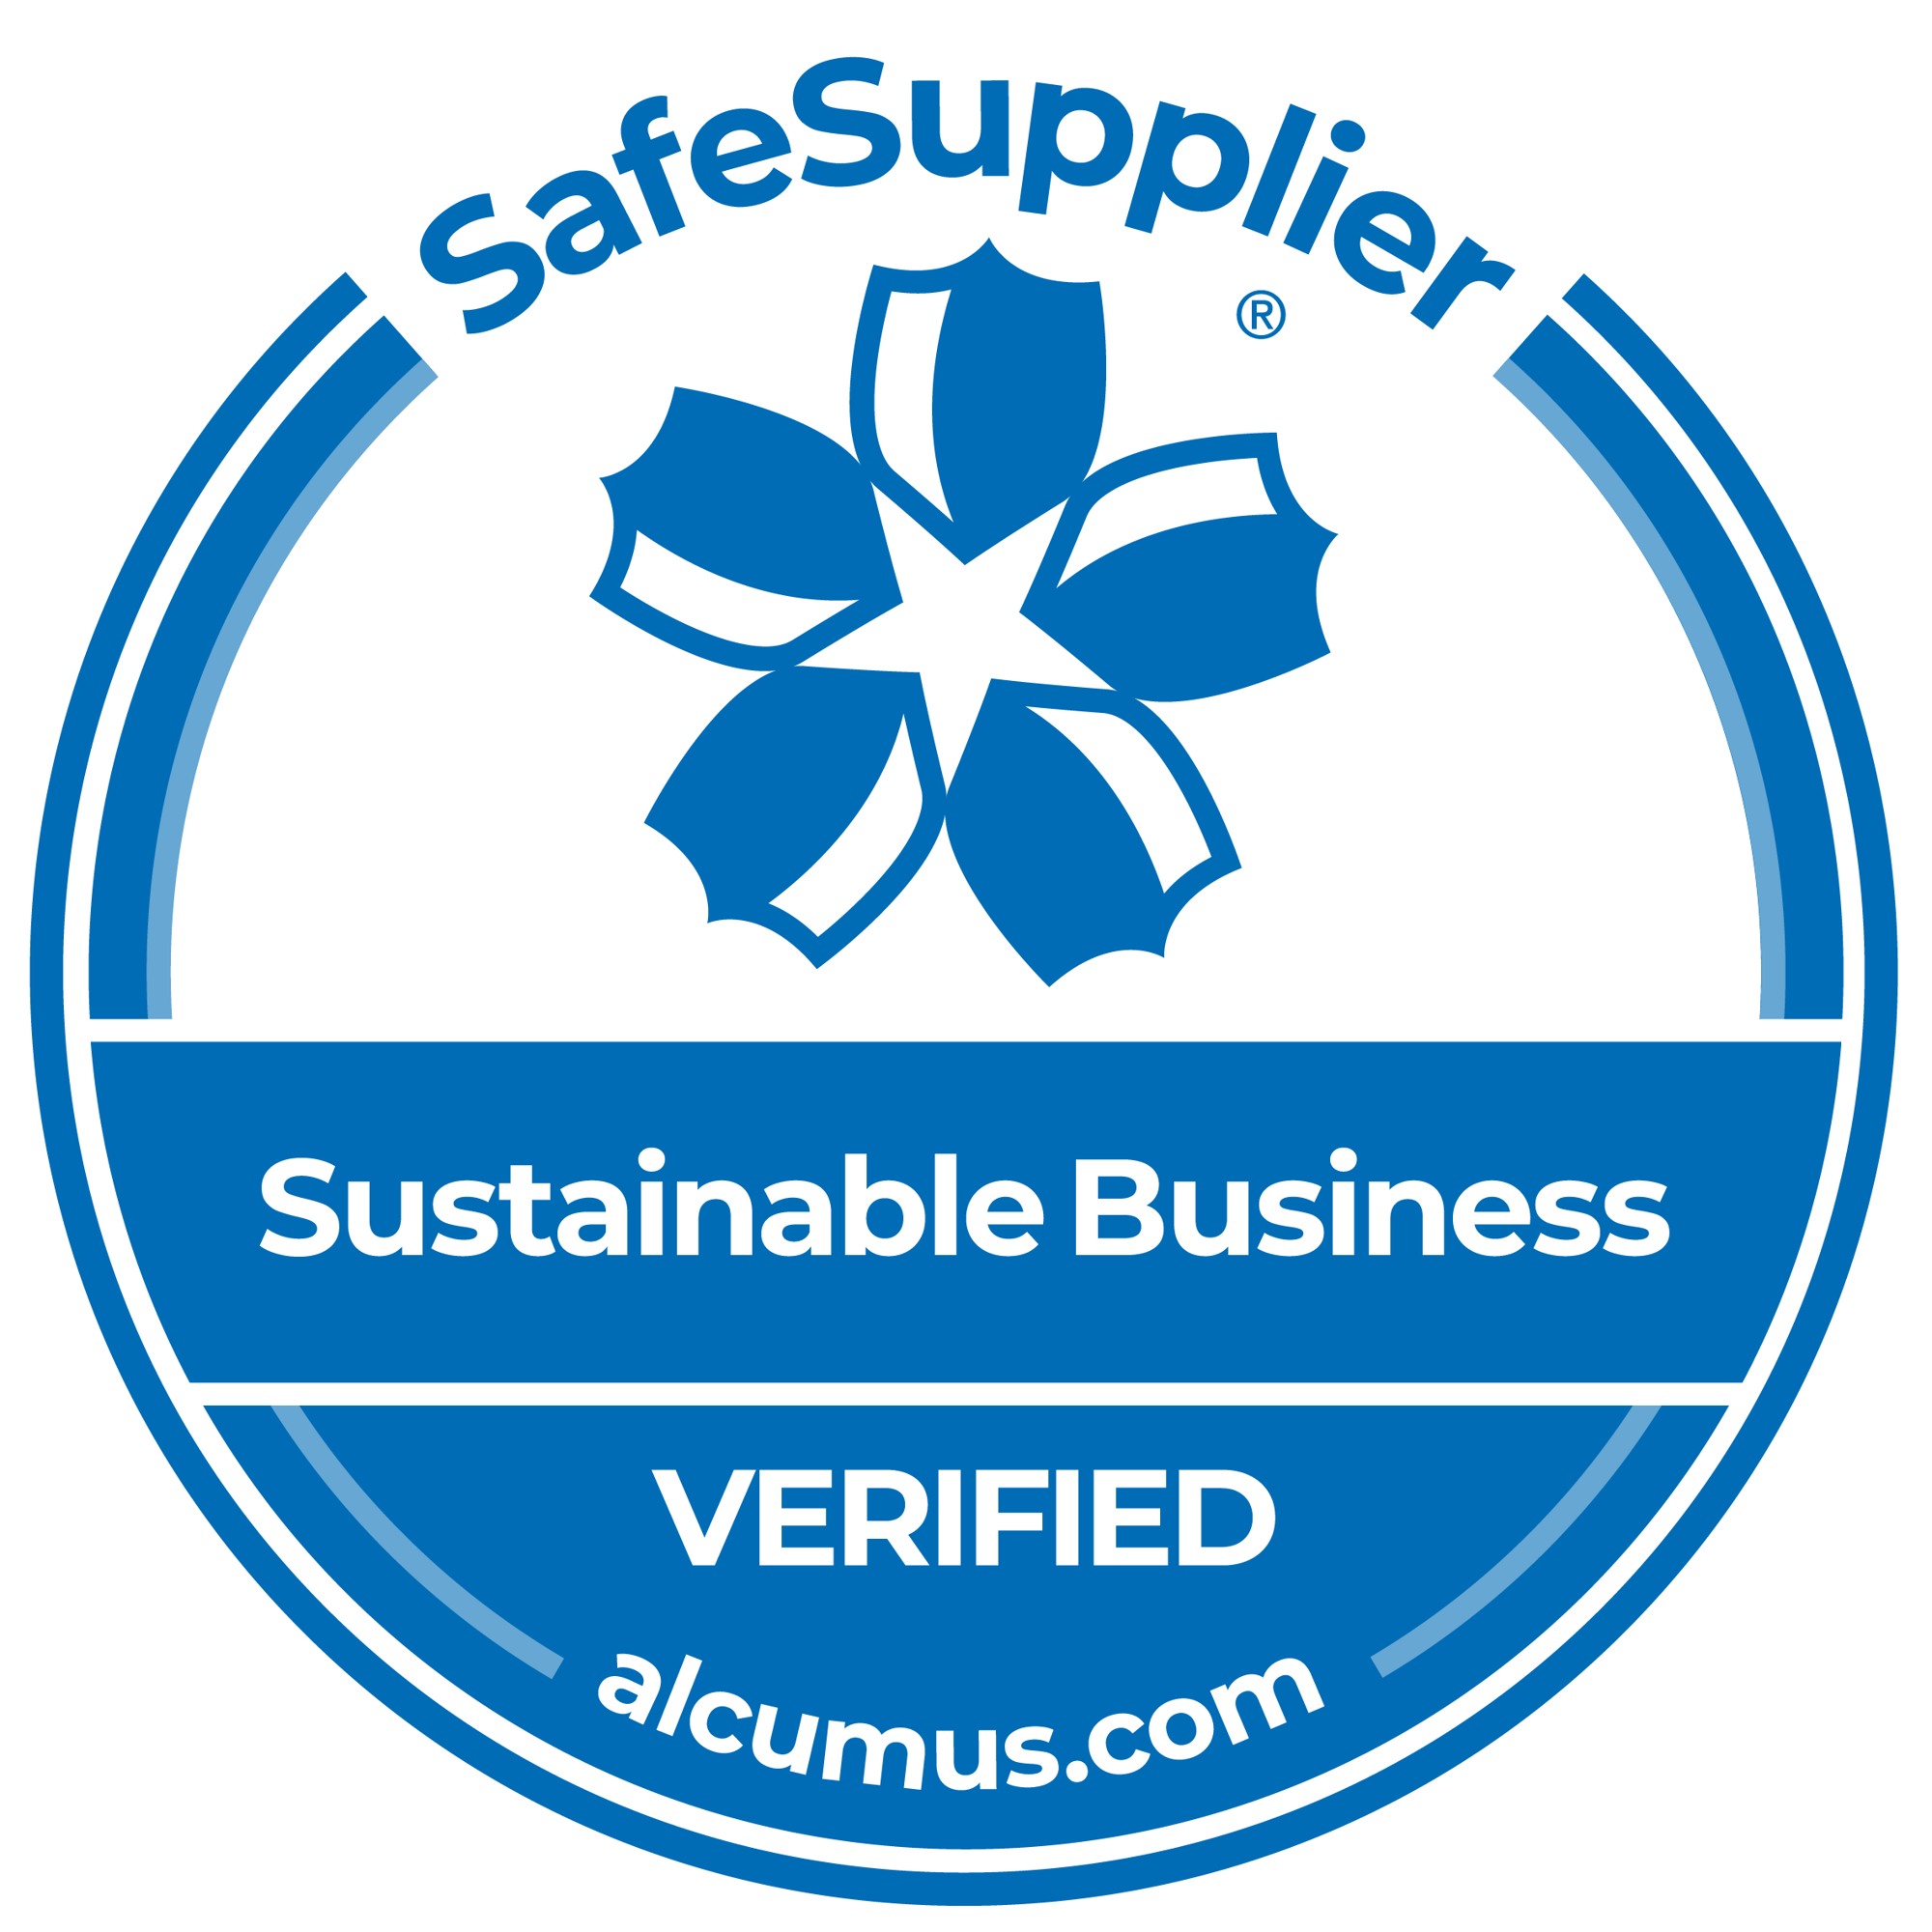 Safesupplier_Seal